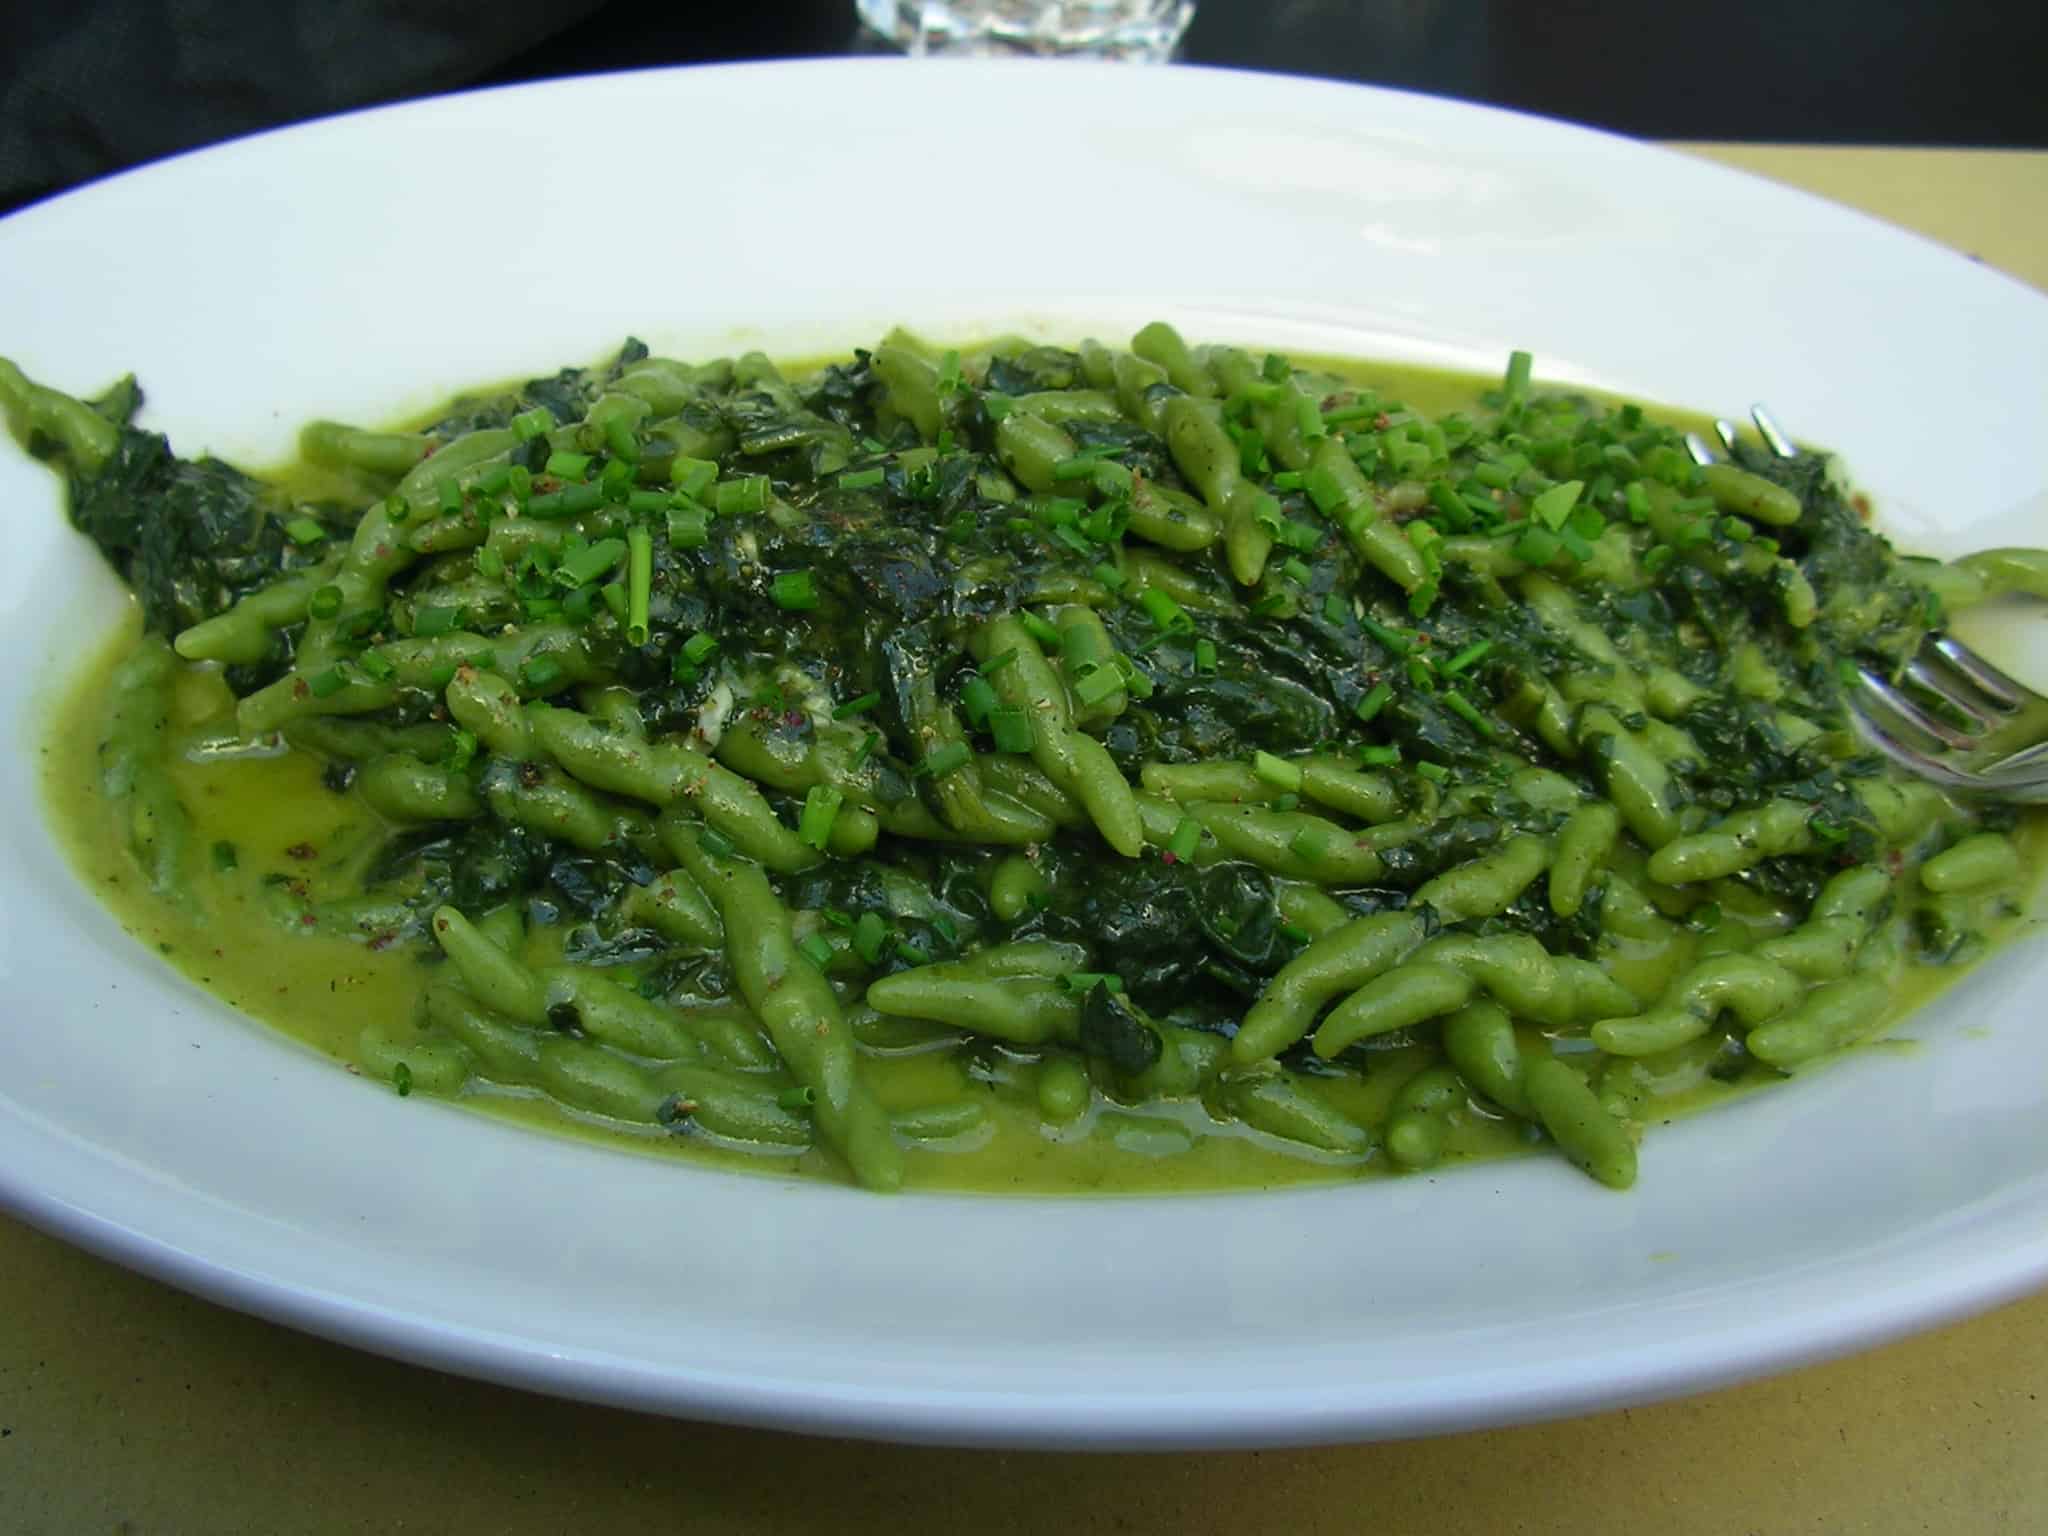 Italy food, pasta photos, vegetarian food photos